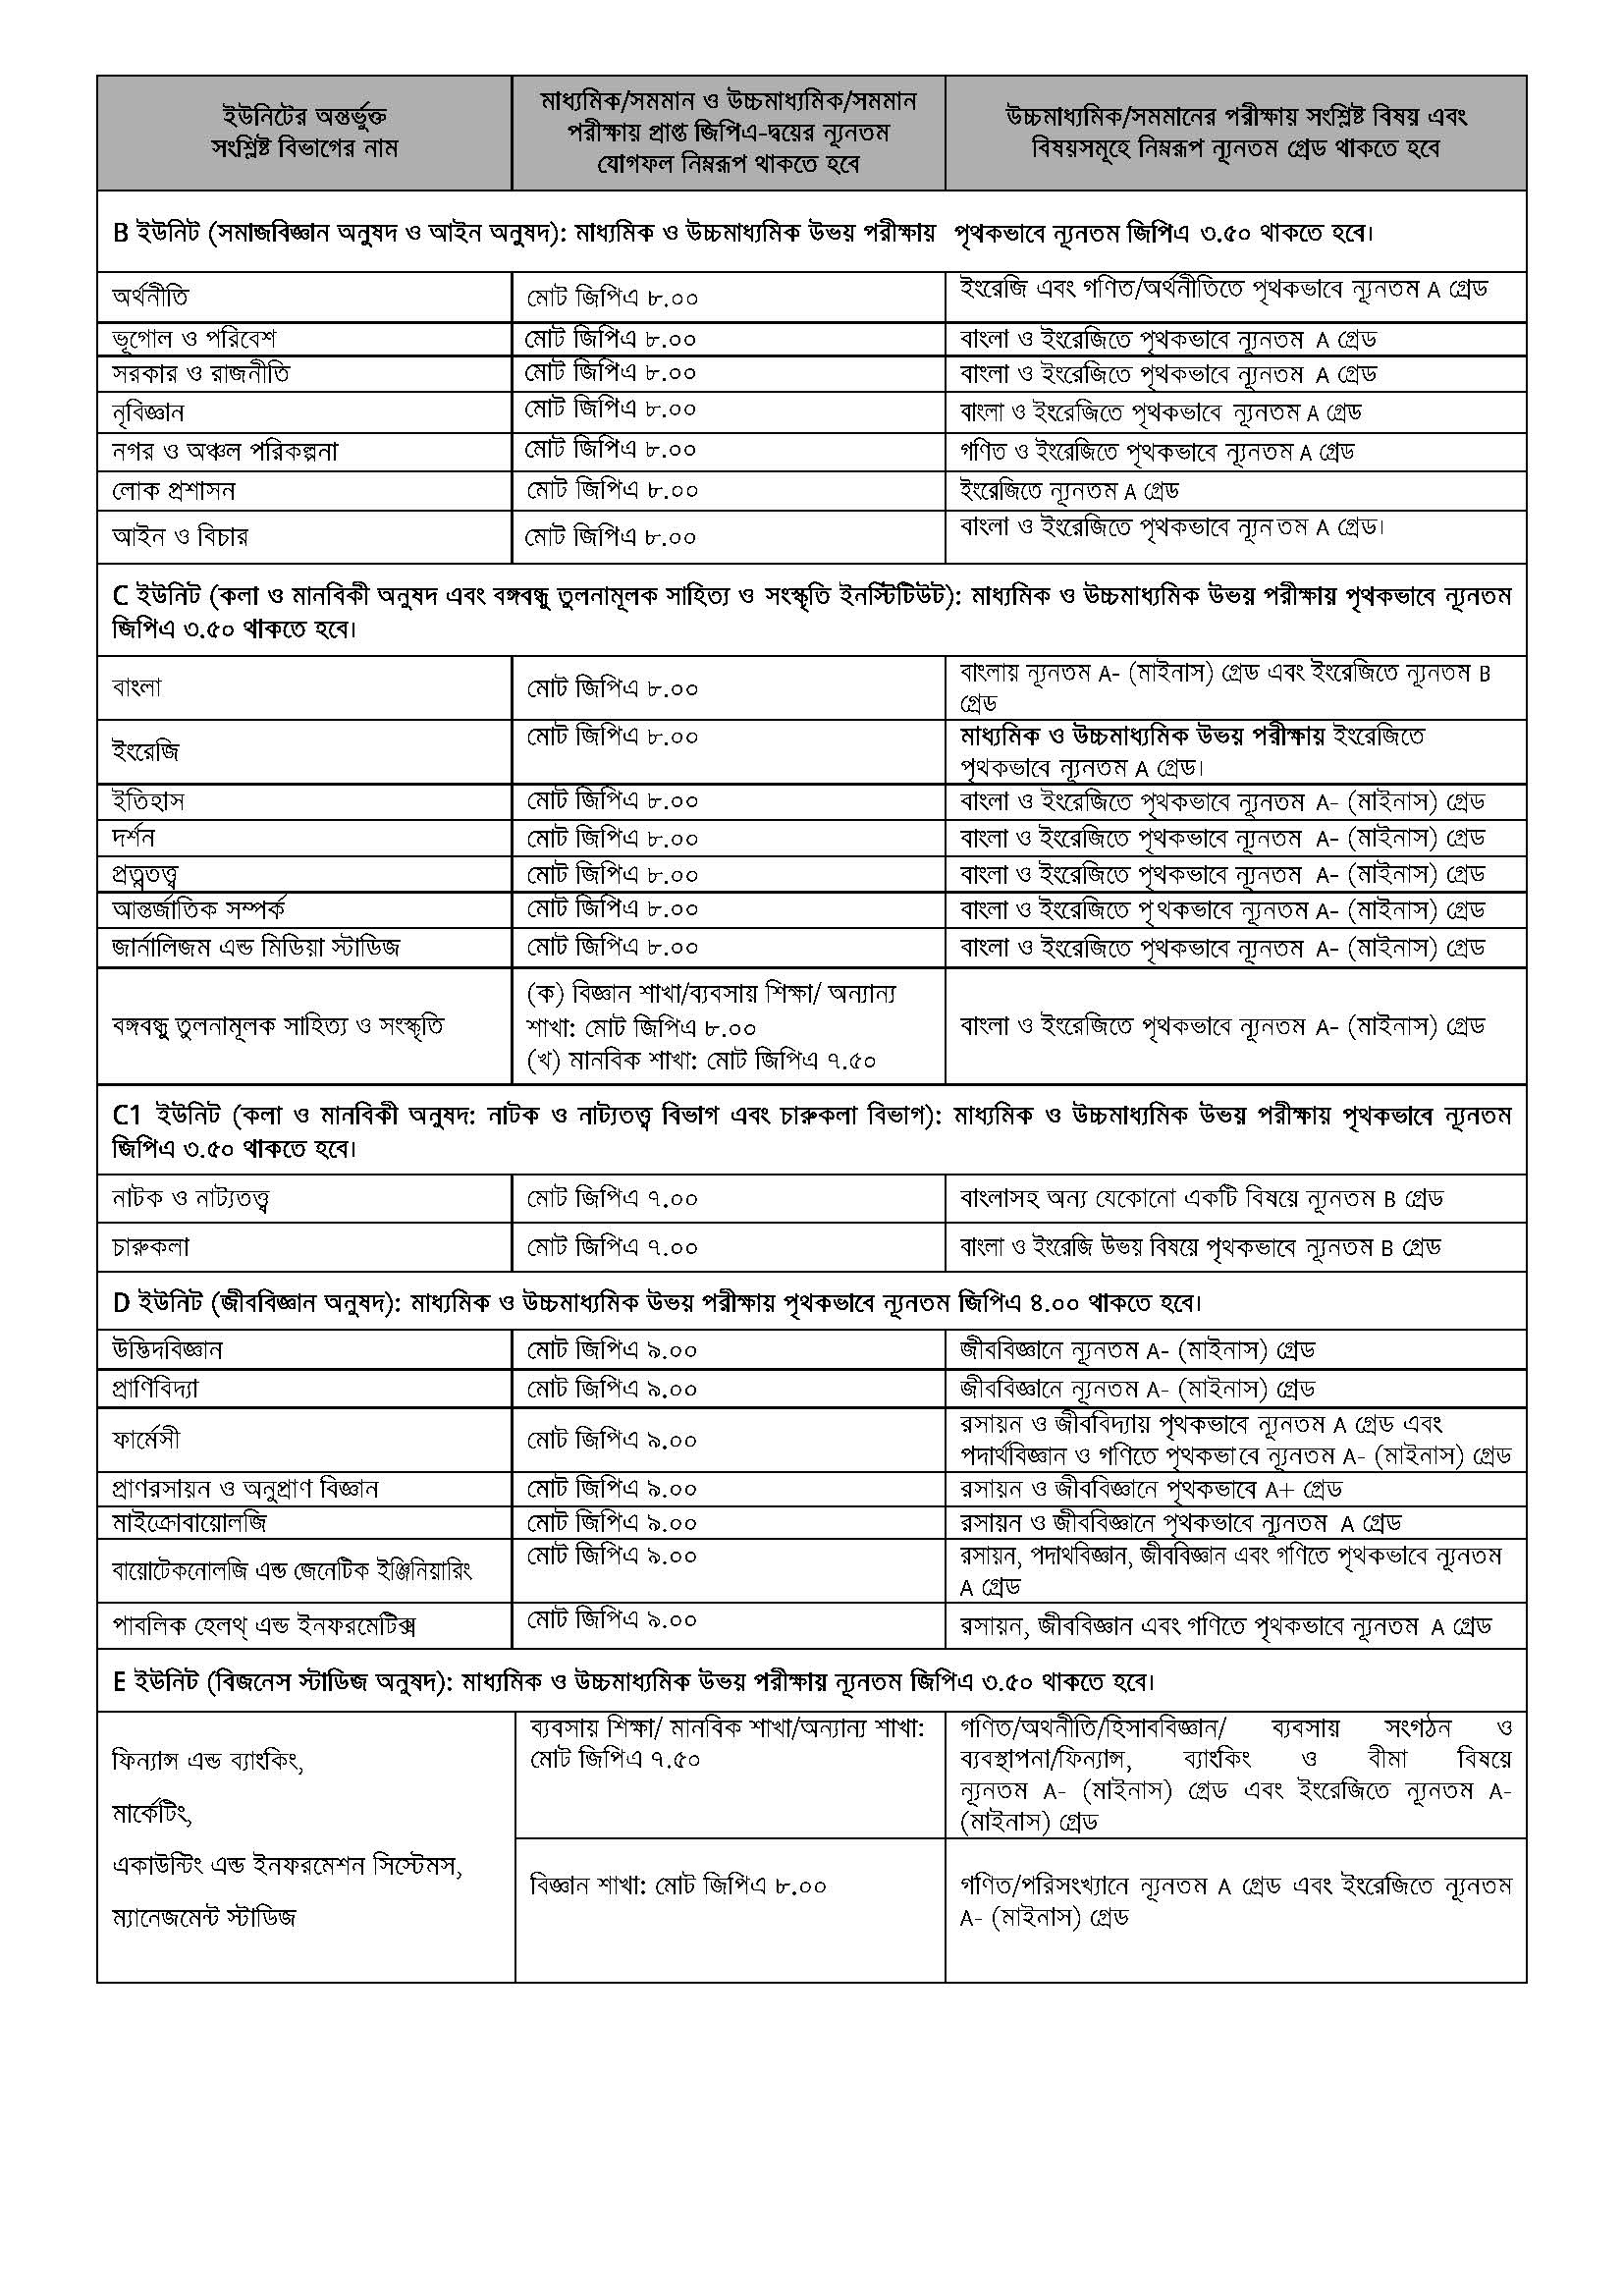 জাহাঙ্গীরনগর বিশ্ববিদ্যালয় ভর্তি তথ্য ২০২৪ | Jahangirnagar University Admission Circular 2023-24